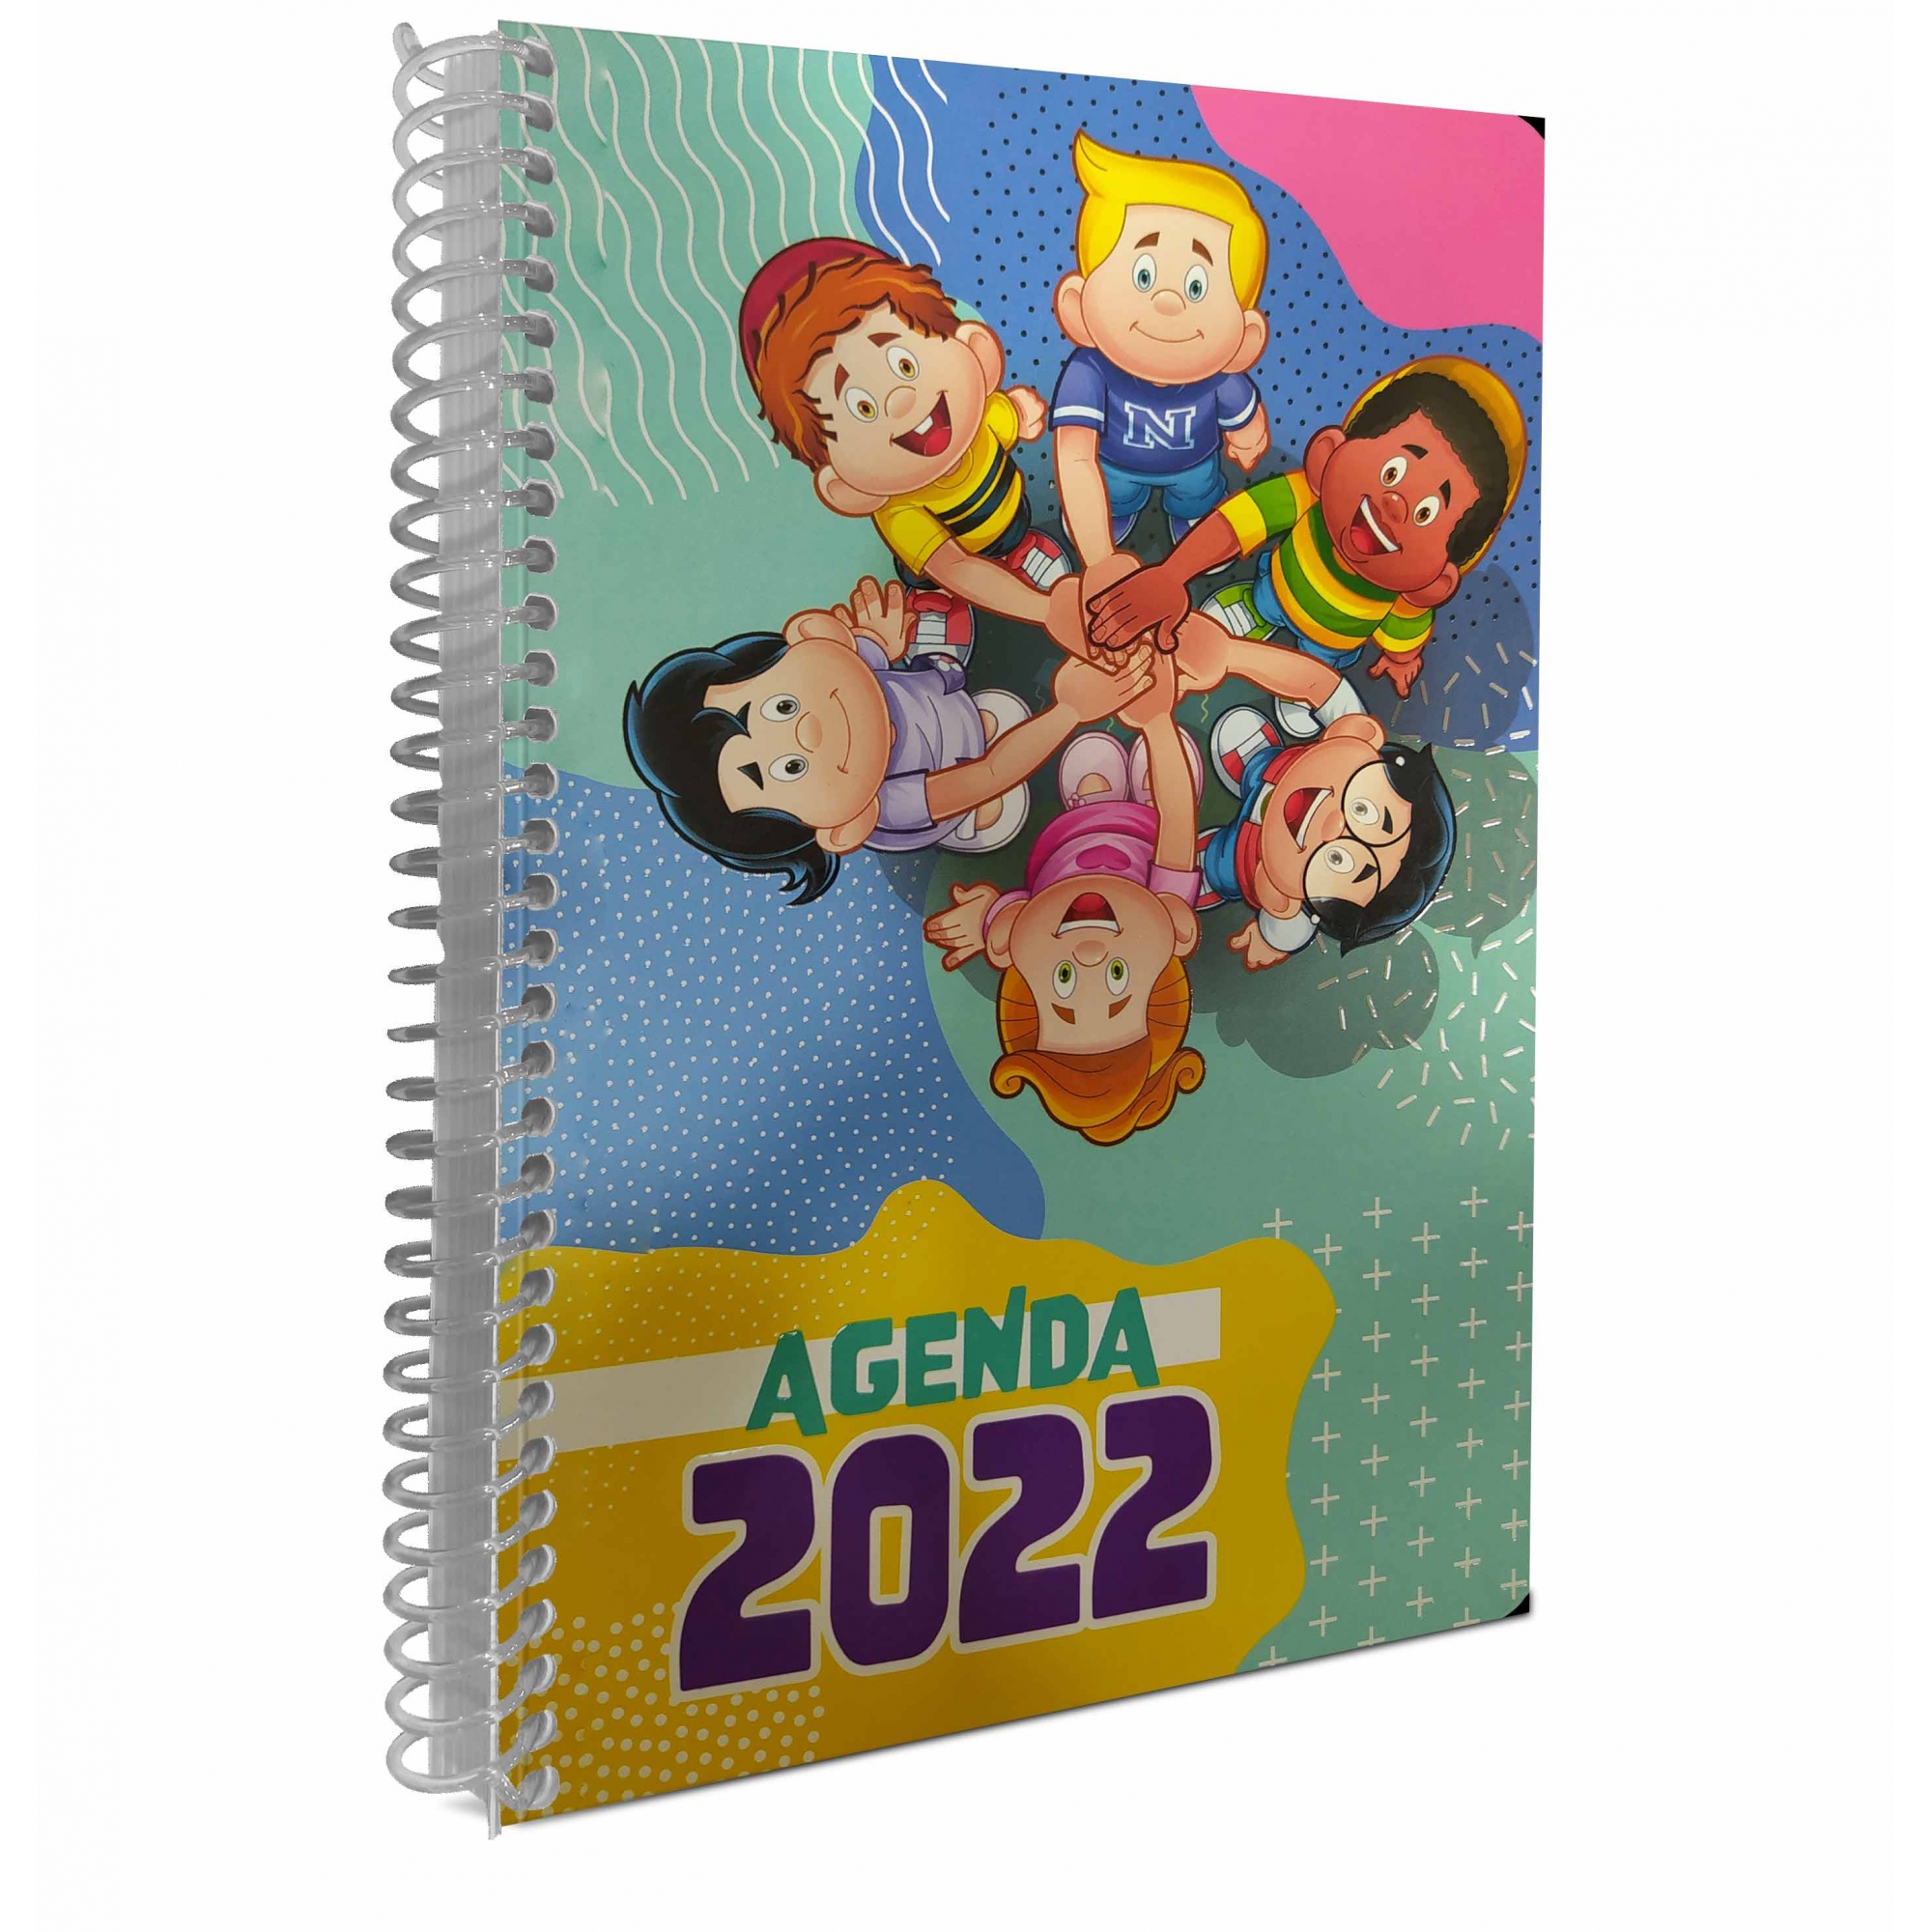 Agenda Escolar Nosso Amiguinho 2022